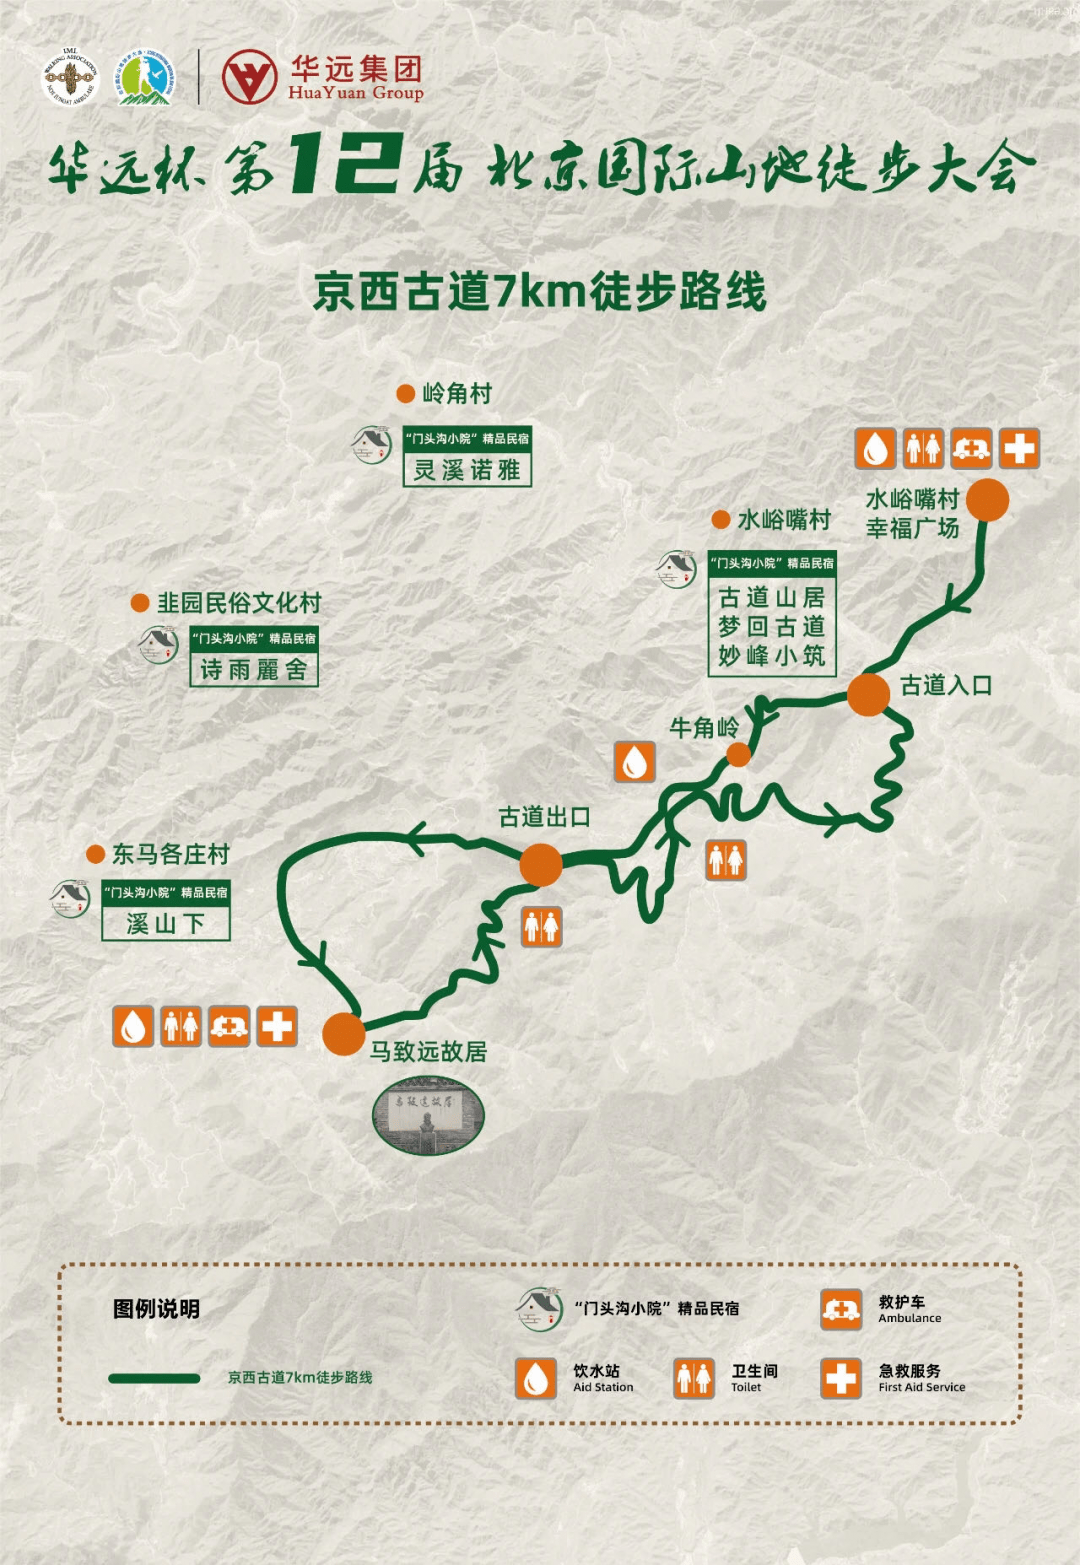 活动时间:5月22,23日 活动地点:妙峰山镇炭厂村(神泉峡景区) 活动时间